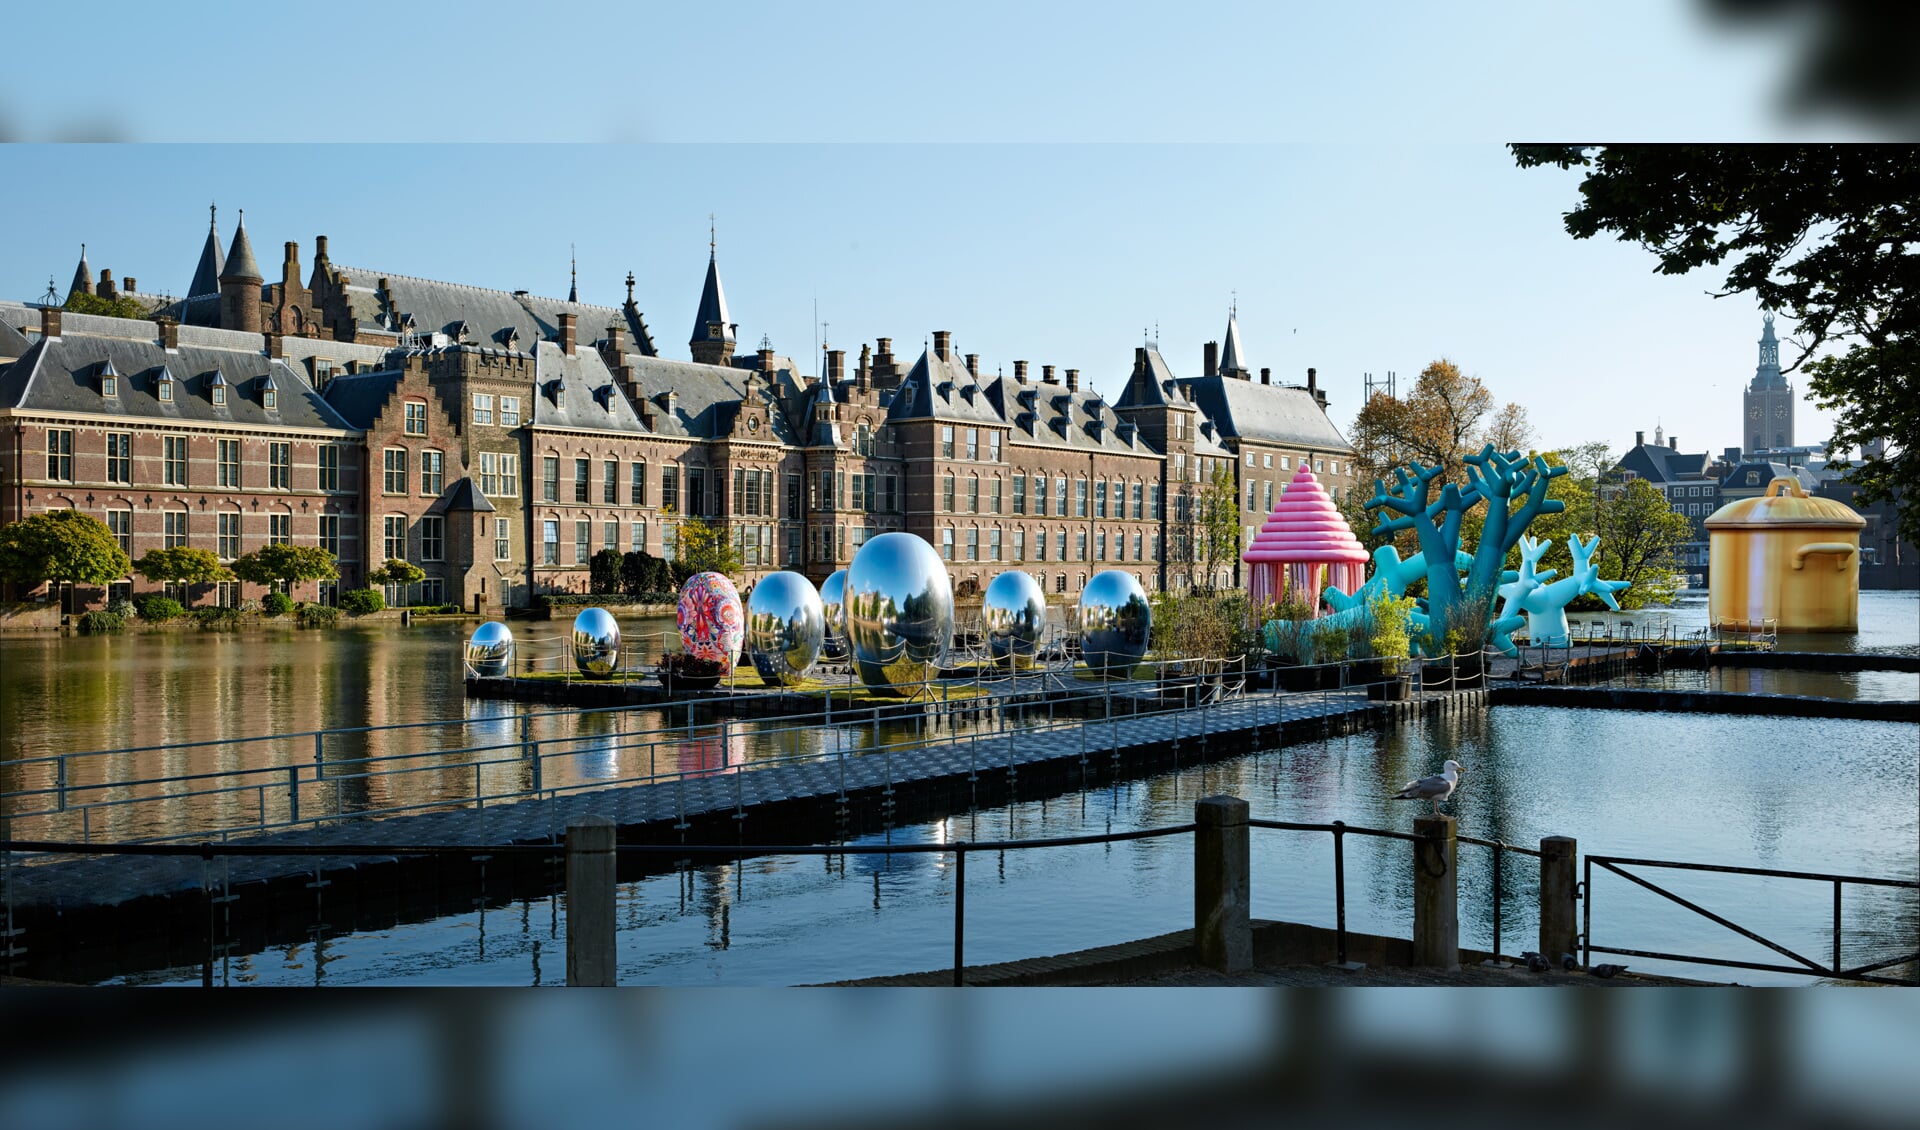 Het tijdelijke festival van opblaaskunstwerken in Museumkwartier Den Haag bloeit op als een weelderige tuin op een ponton.